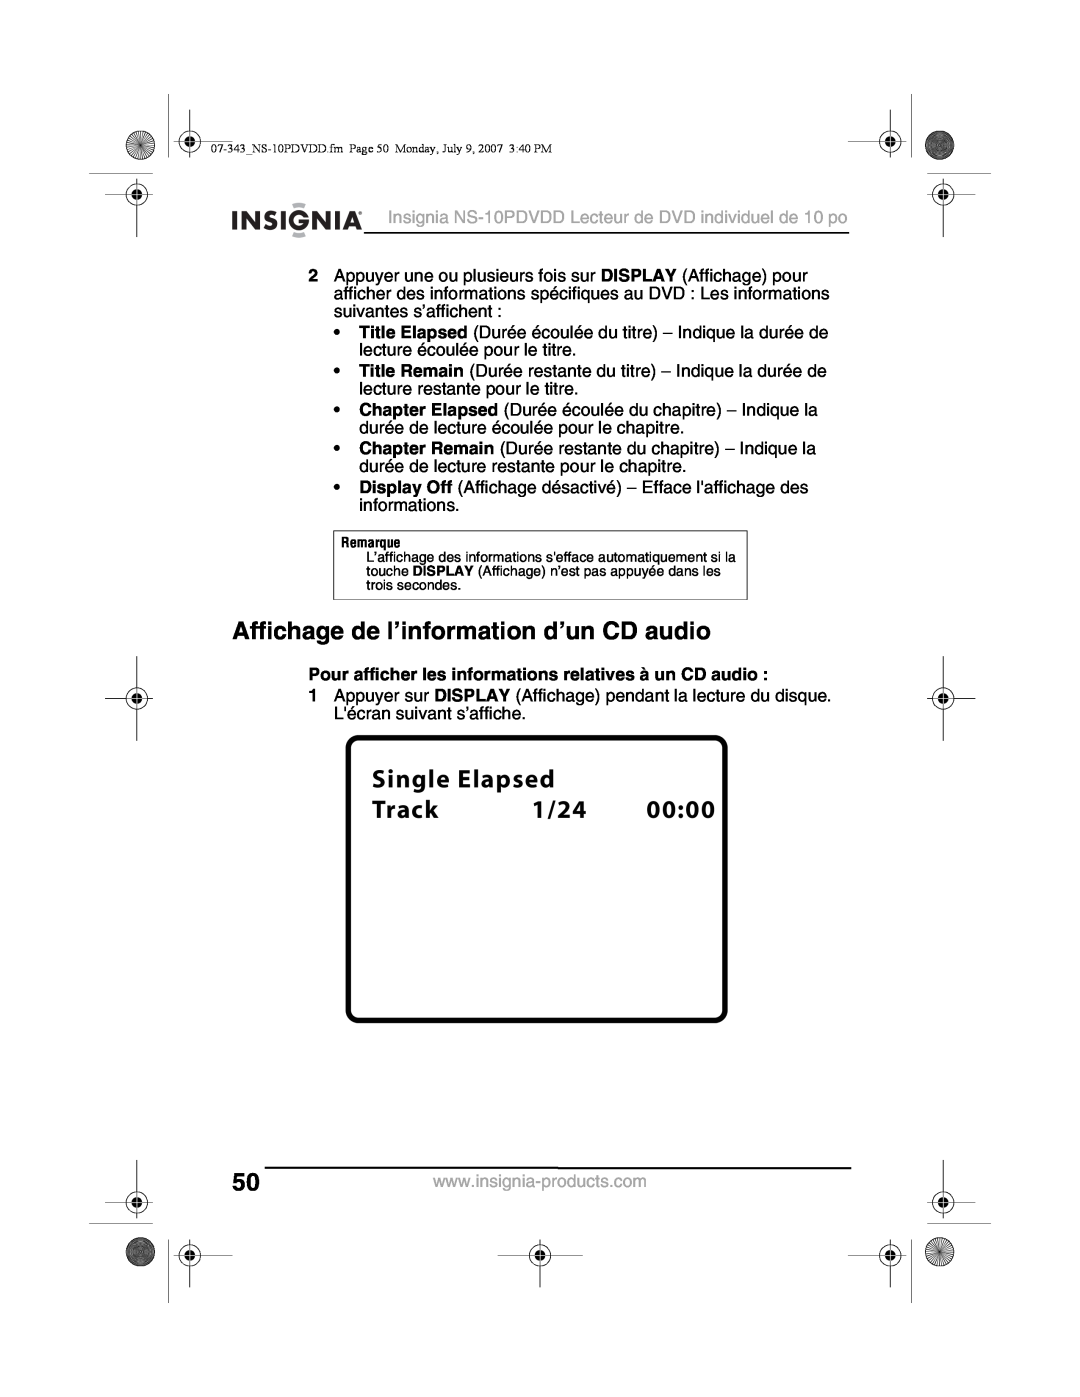 Insignia NS-10PDVDD manual Affichage de l’information d’un CD audio, Pour afficher les informations relatives à un CD audio 